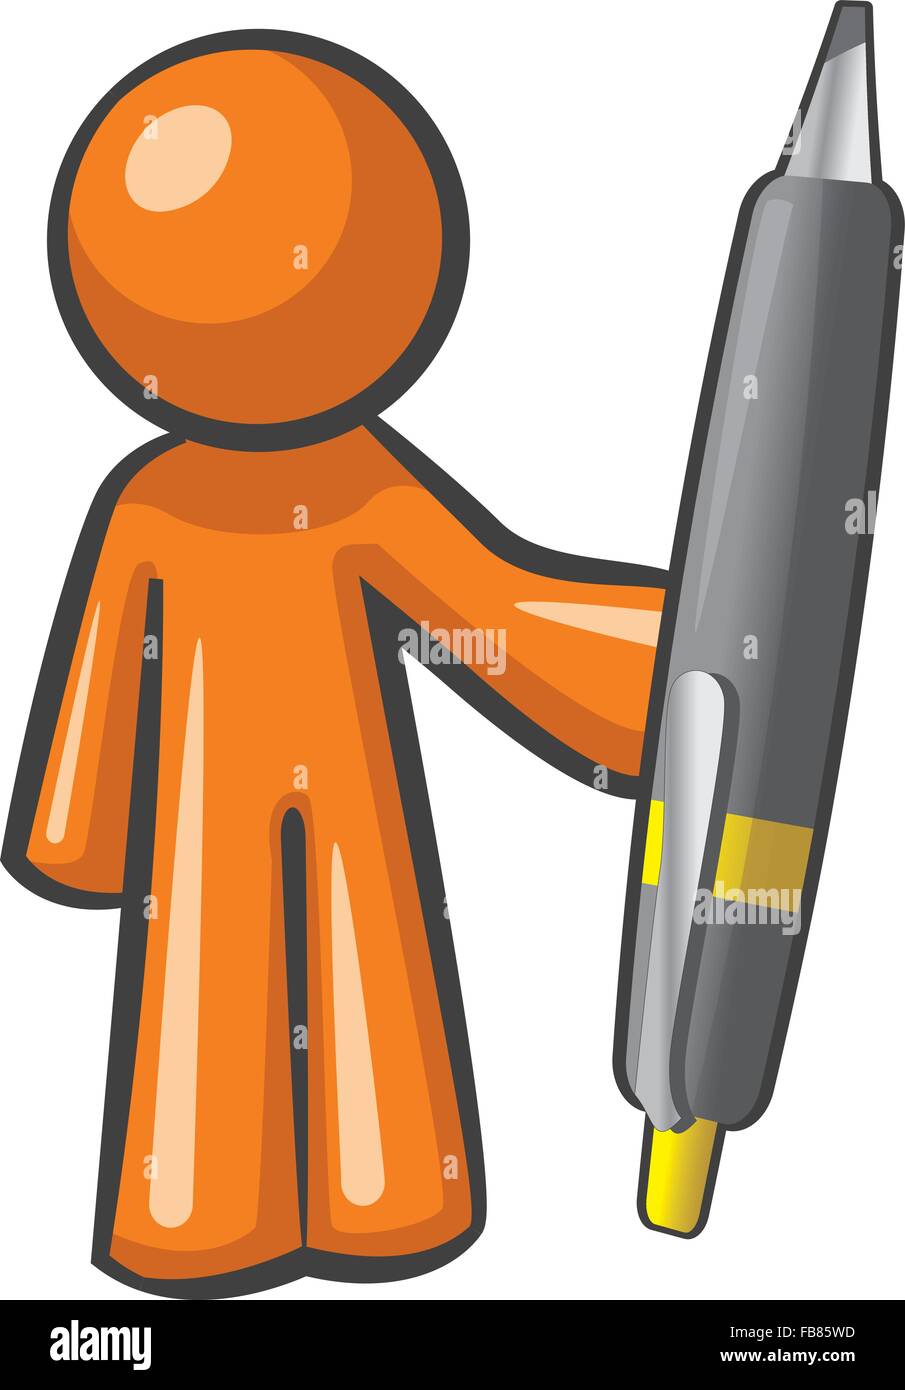 Man holding Orange un géant, immense plume. Le stylo est plus puissant, comme peuvent être vus distinctement ici. Illustration de Vecteur